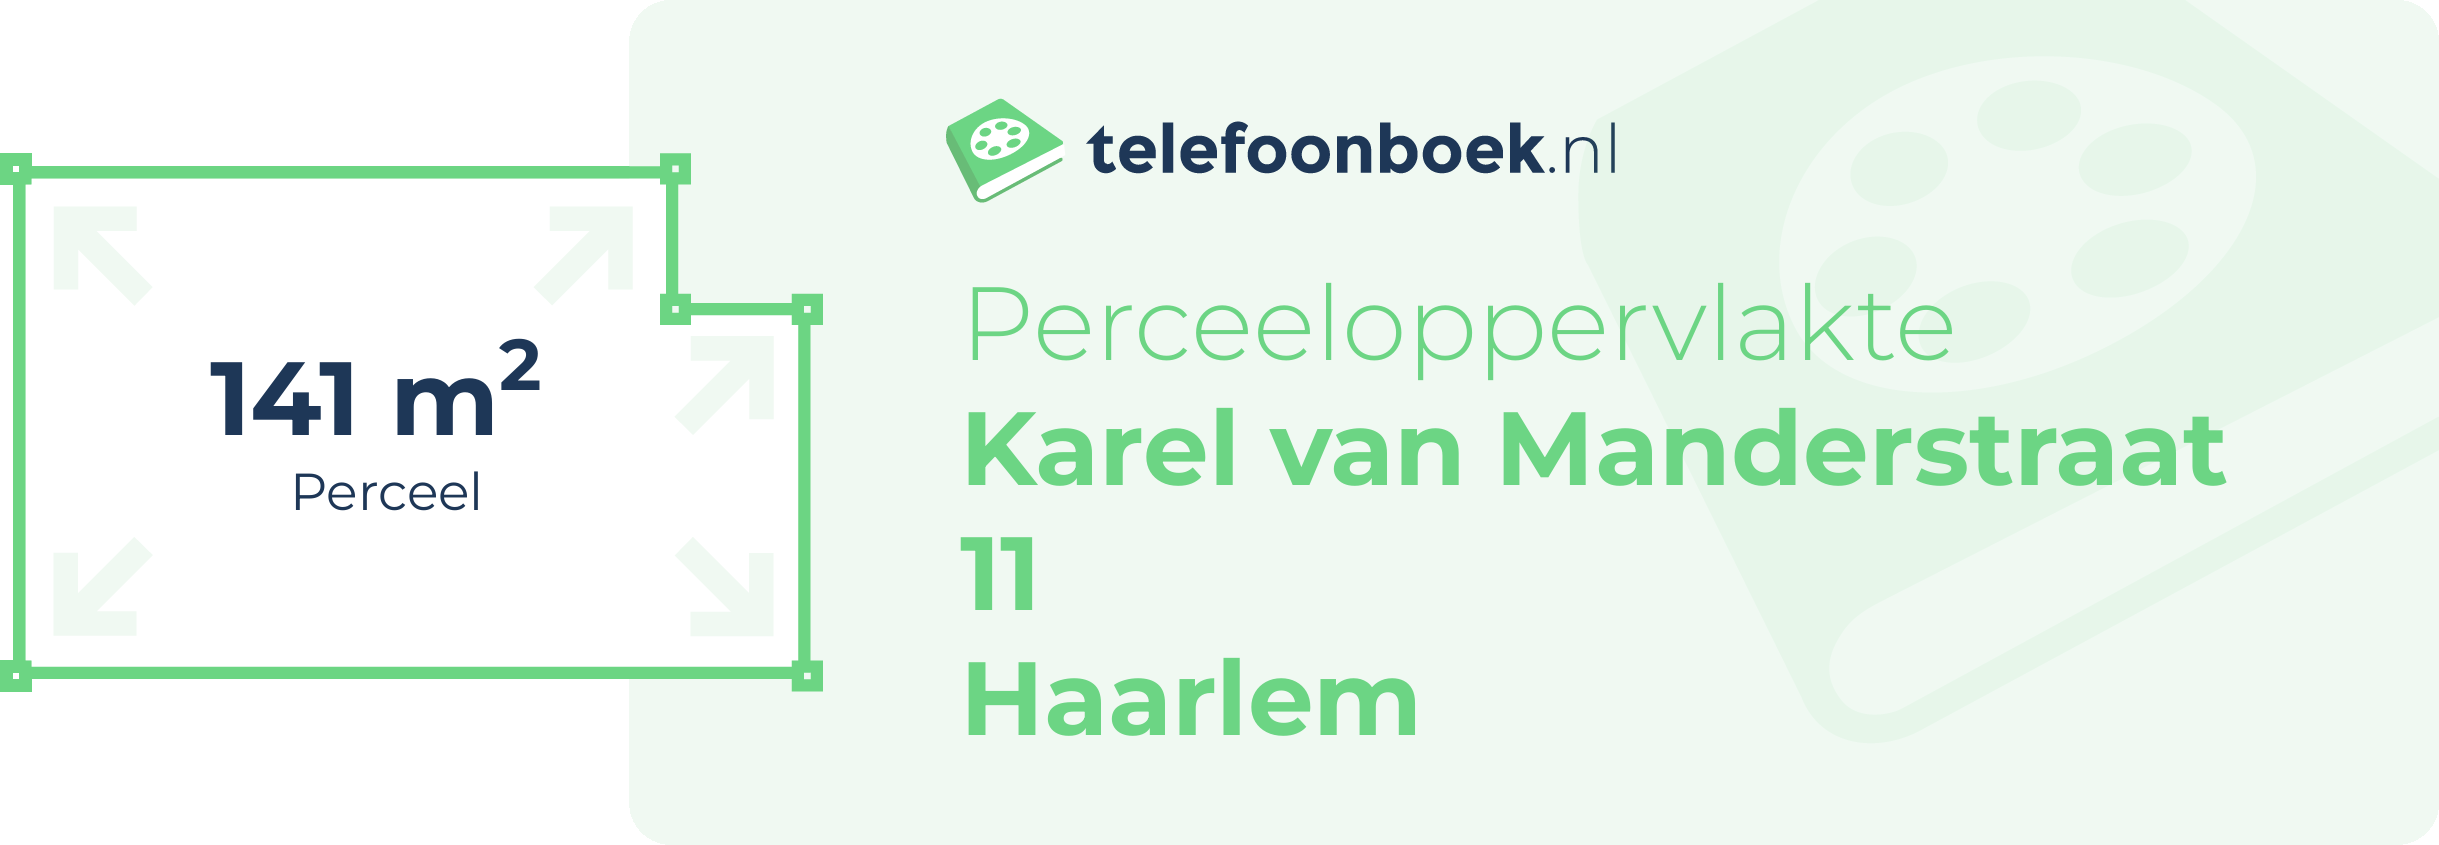 Perceeloppervlakte Karel Van Manderstraat 11 Haarlem